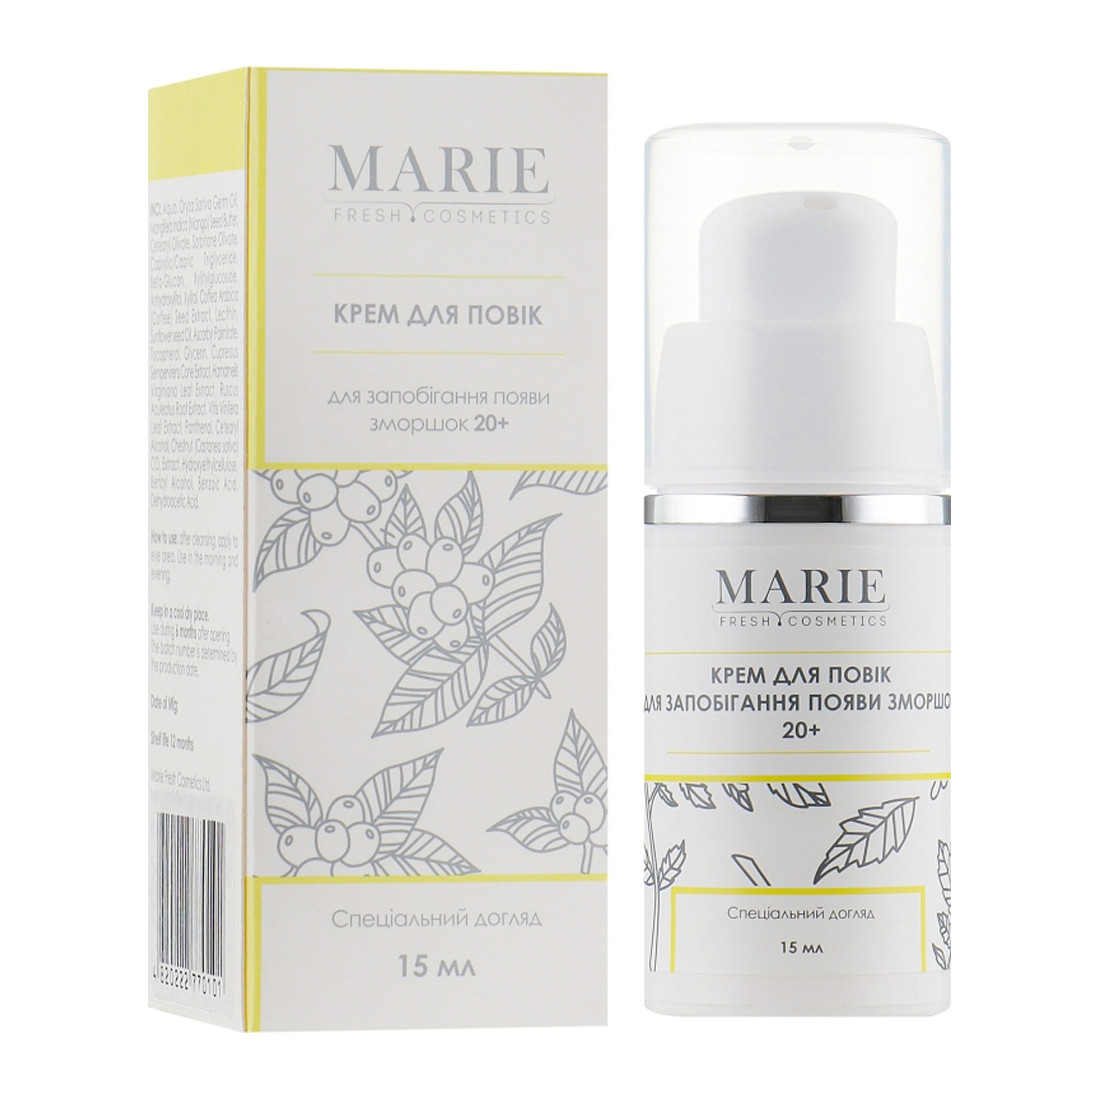 Крем для повік Marie Fresh Cosmetics Eye Cream 30-40+